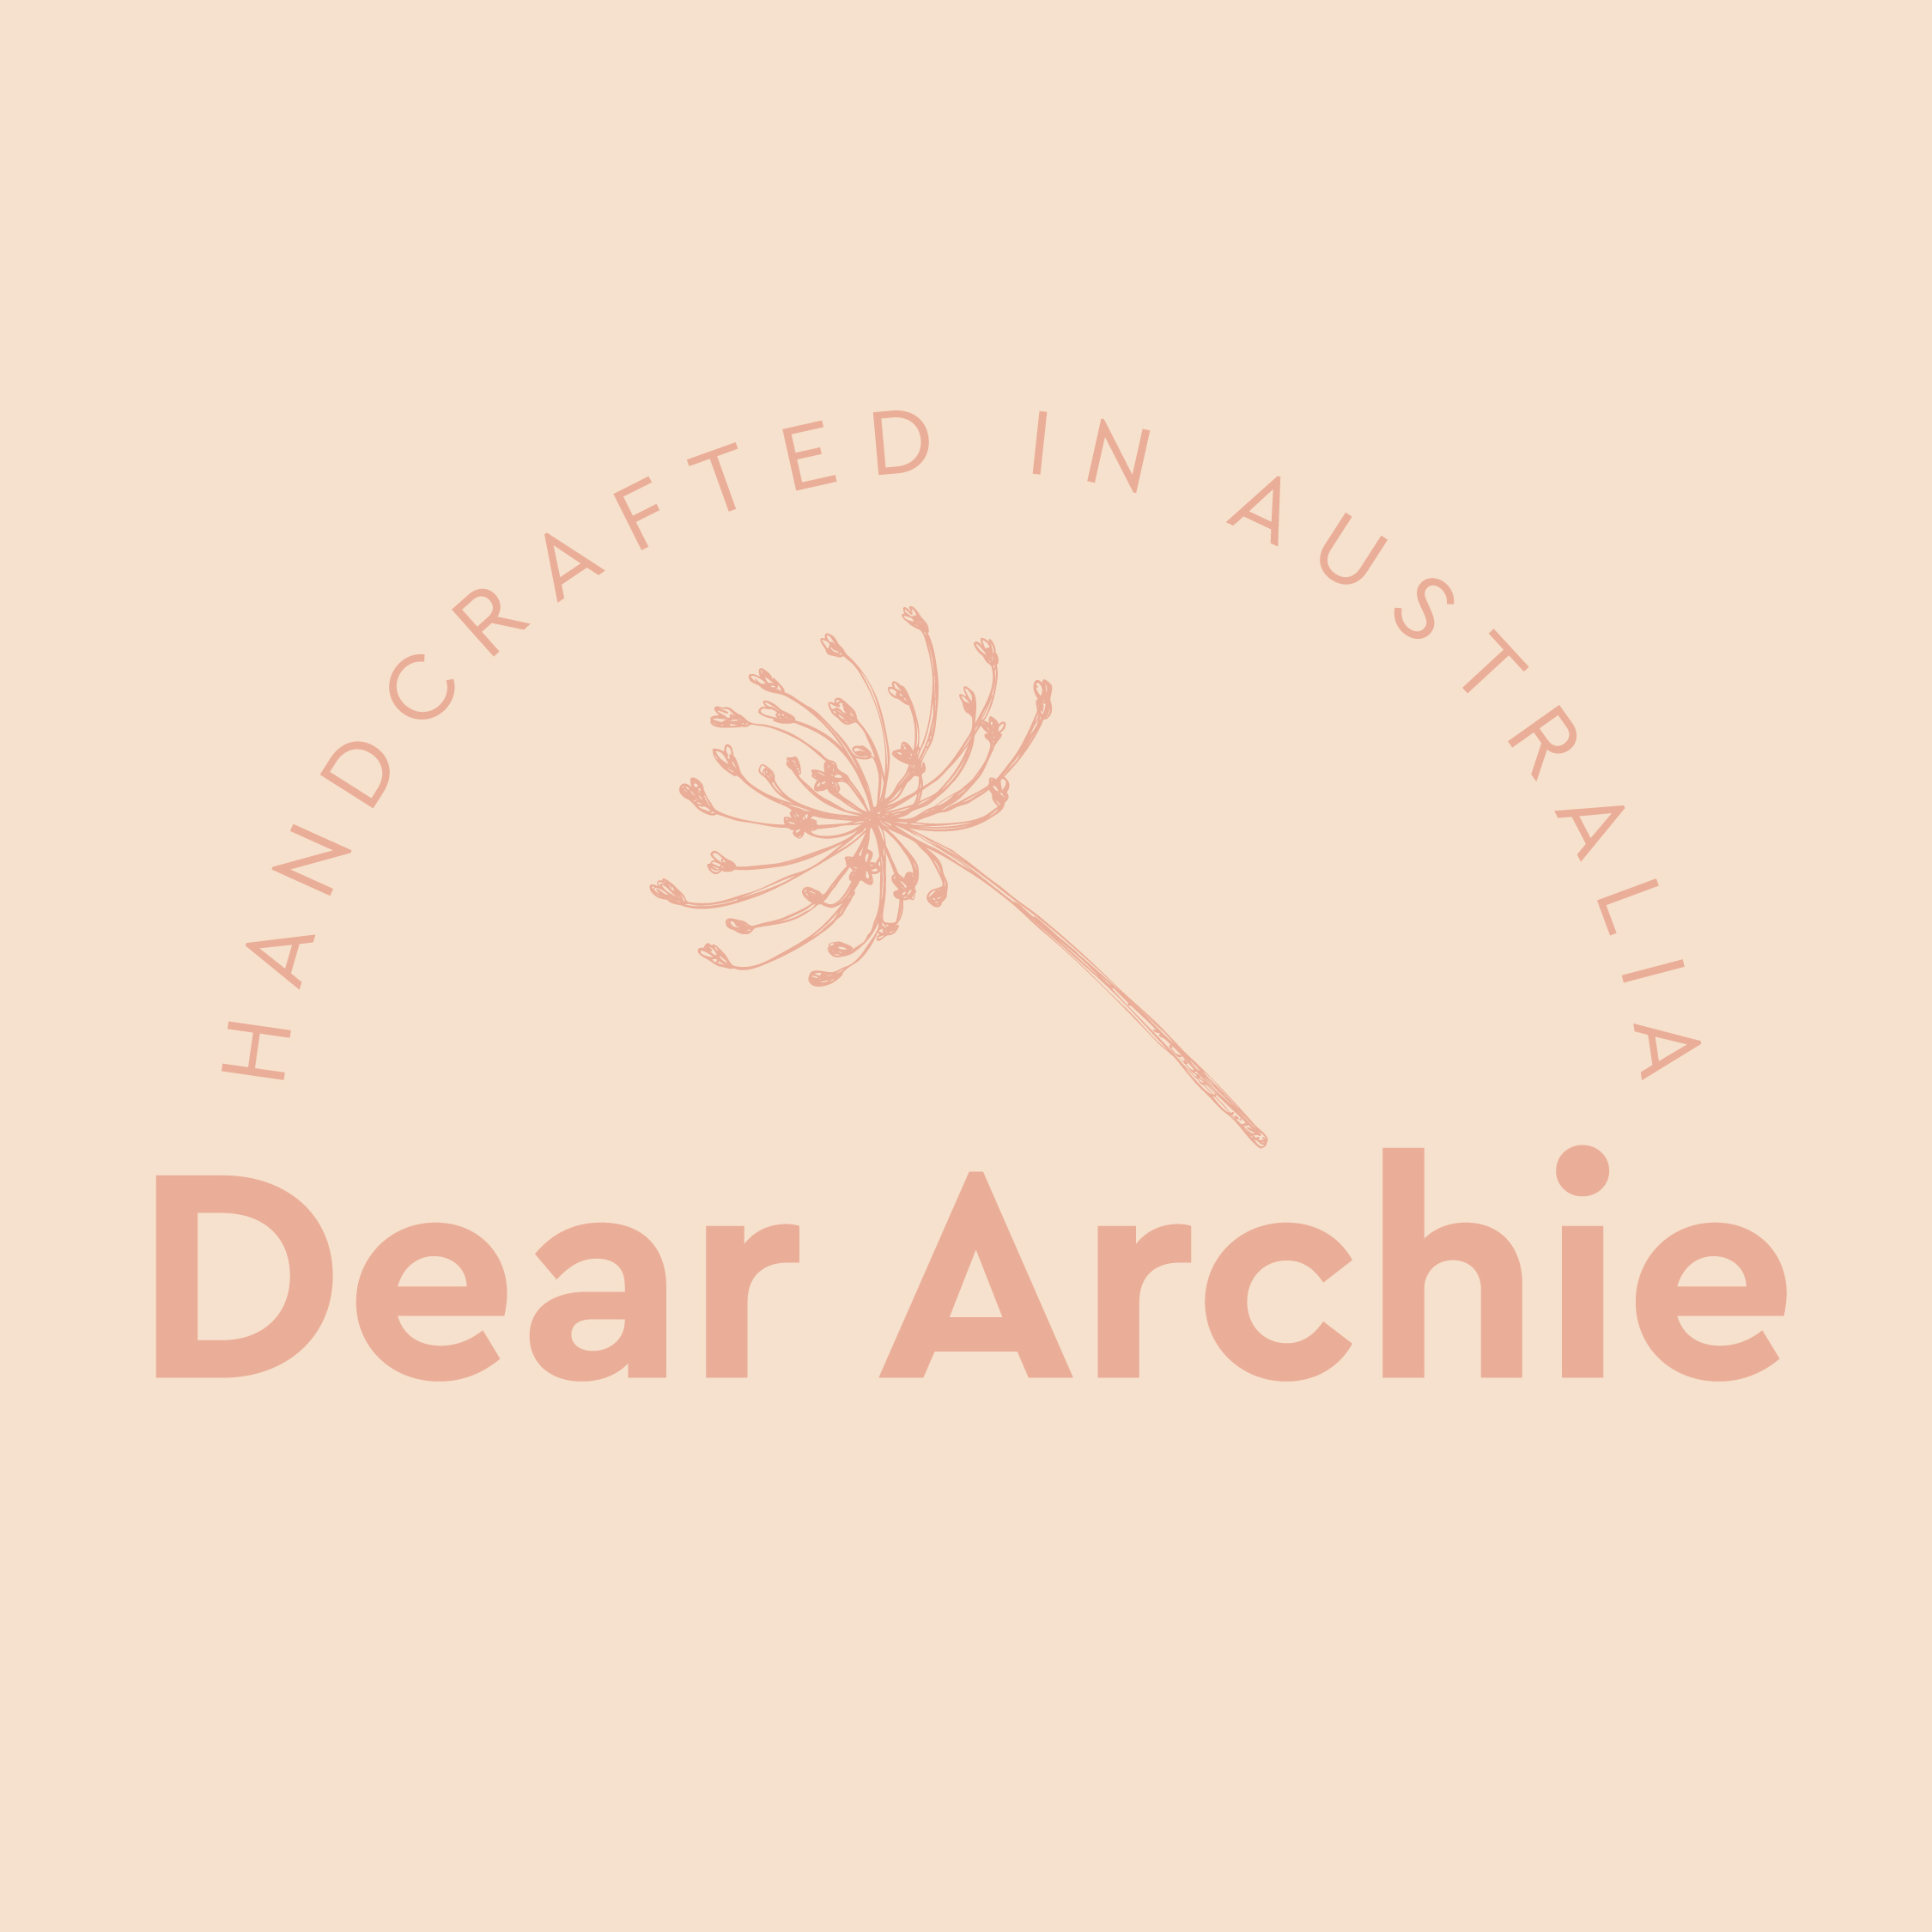 Dear Archie